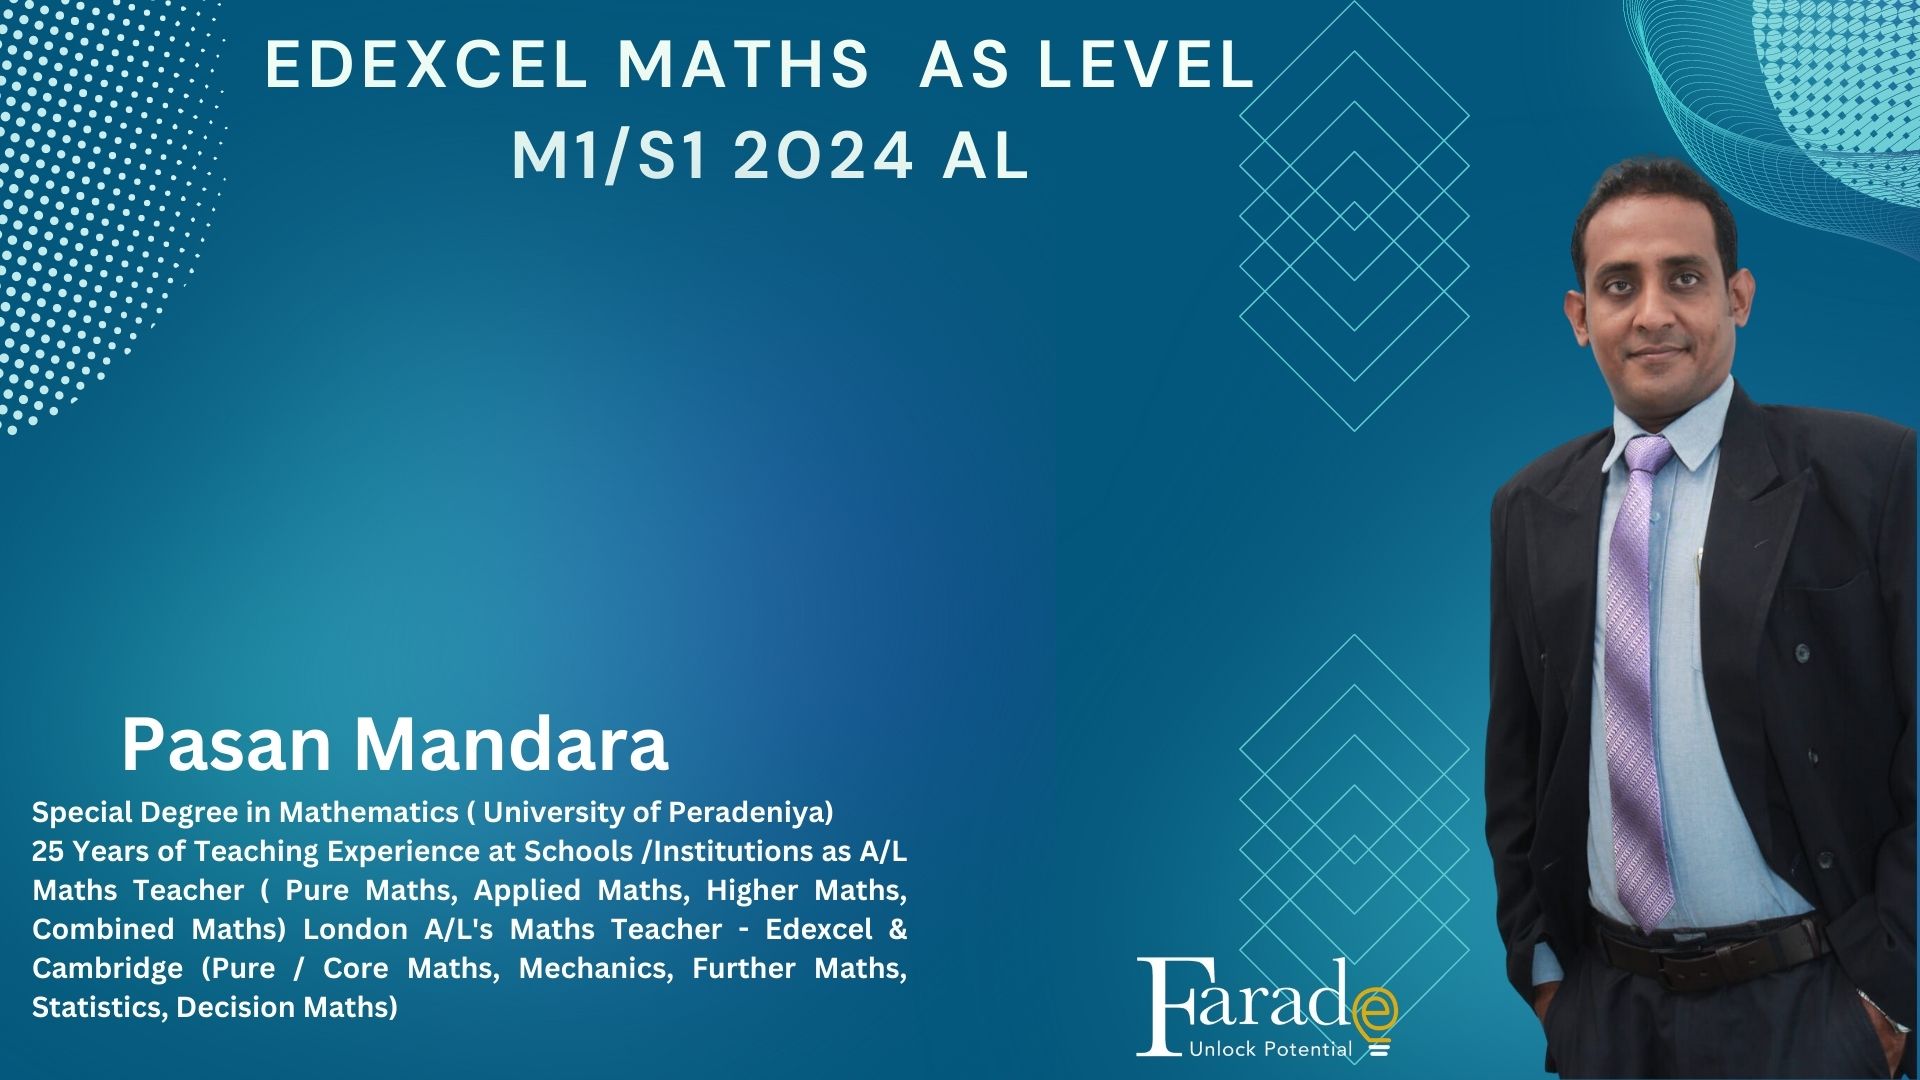 Edexcel Maths AS Level M1/S1 2024 AL course July 23